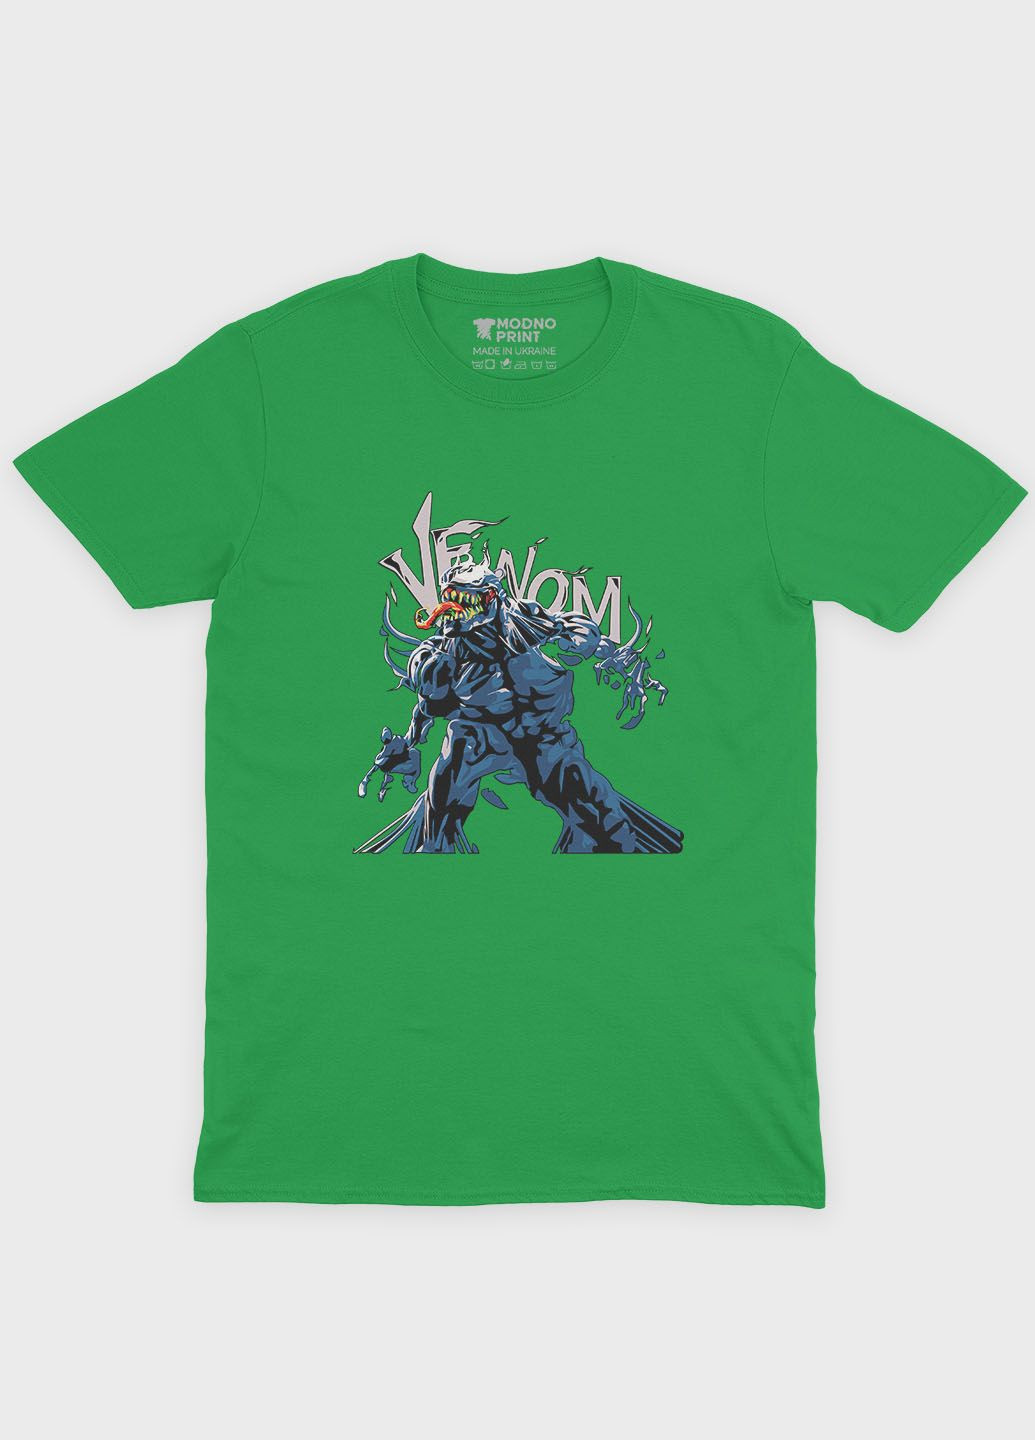 Зелена демісезонна футболка для хлопчика з принтом суперзлодія - веном (ts001-1-keg-006-013-012-b) Modno